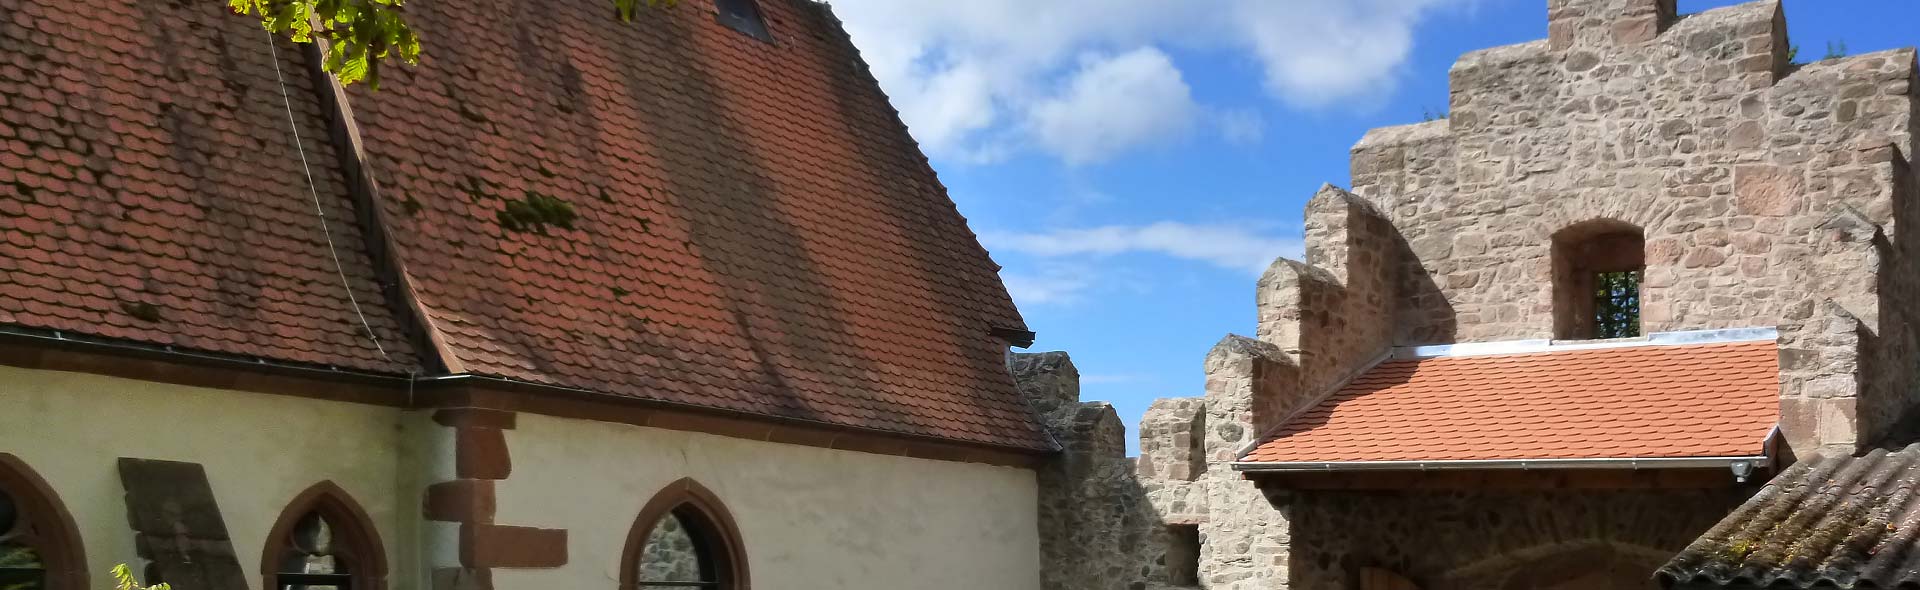 Schloss Reichenberg: Kapelle und Schlosstor